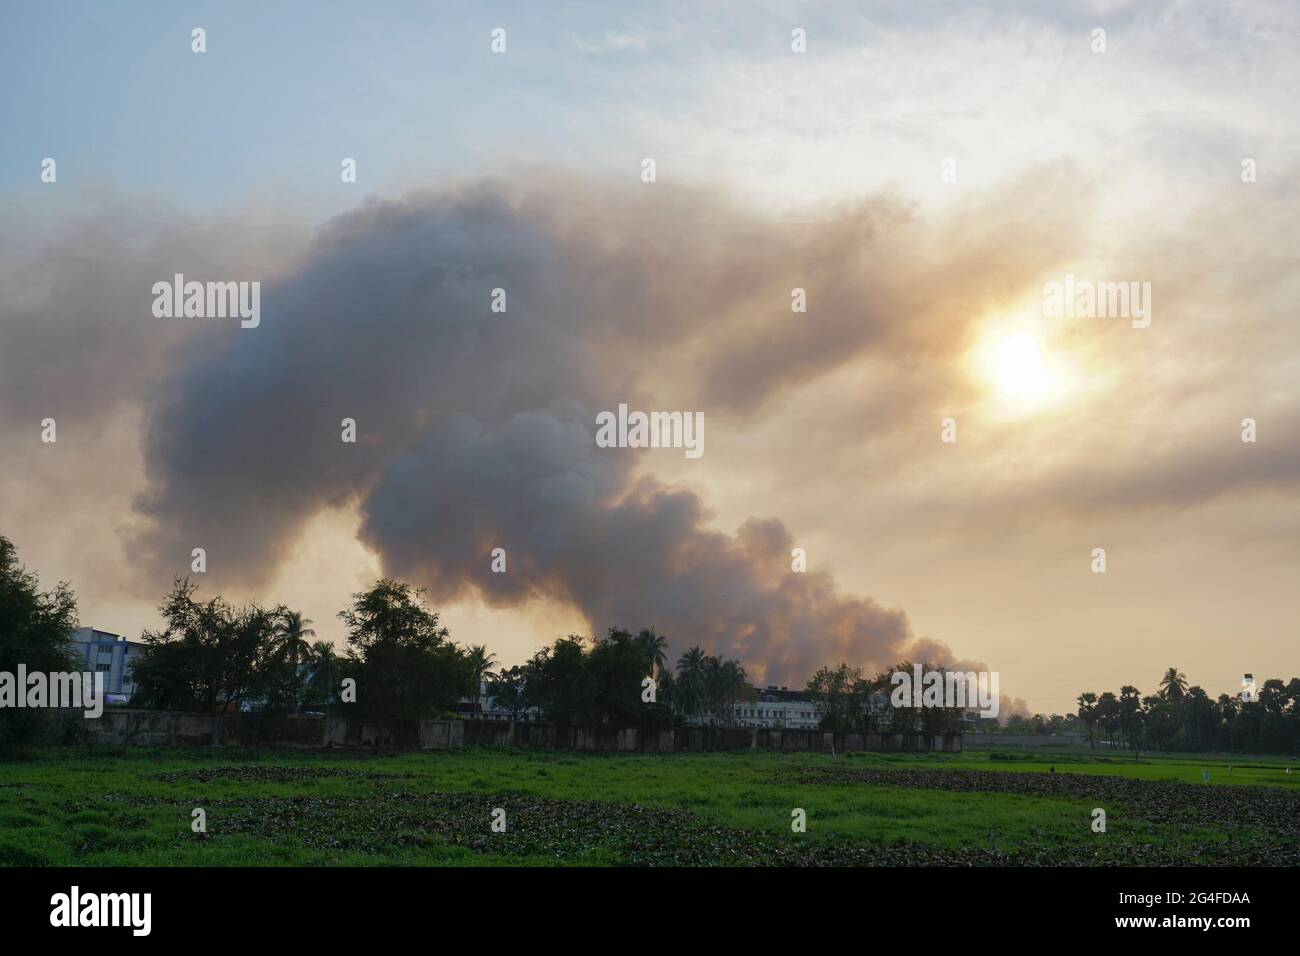 Humo saliendo de las fábricas En el horizonte, la contaminación del aire se está extendiendo como nubes y cubriendo el sol poniente. Rodada en la aldea rural de WB, India. Foto de stock